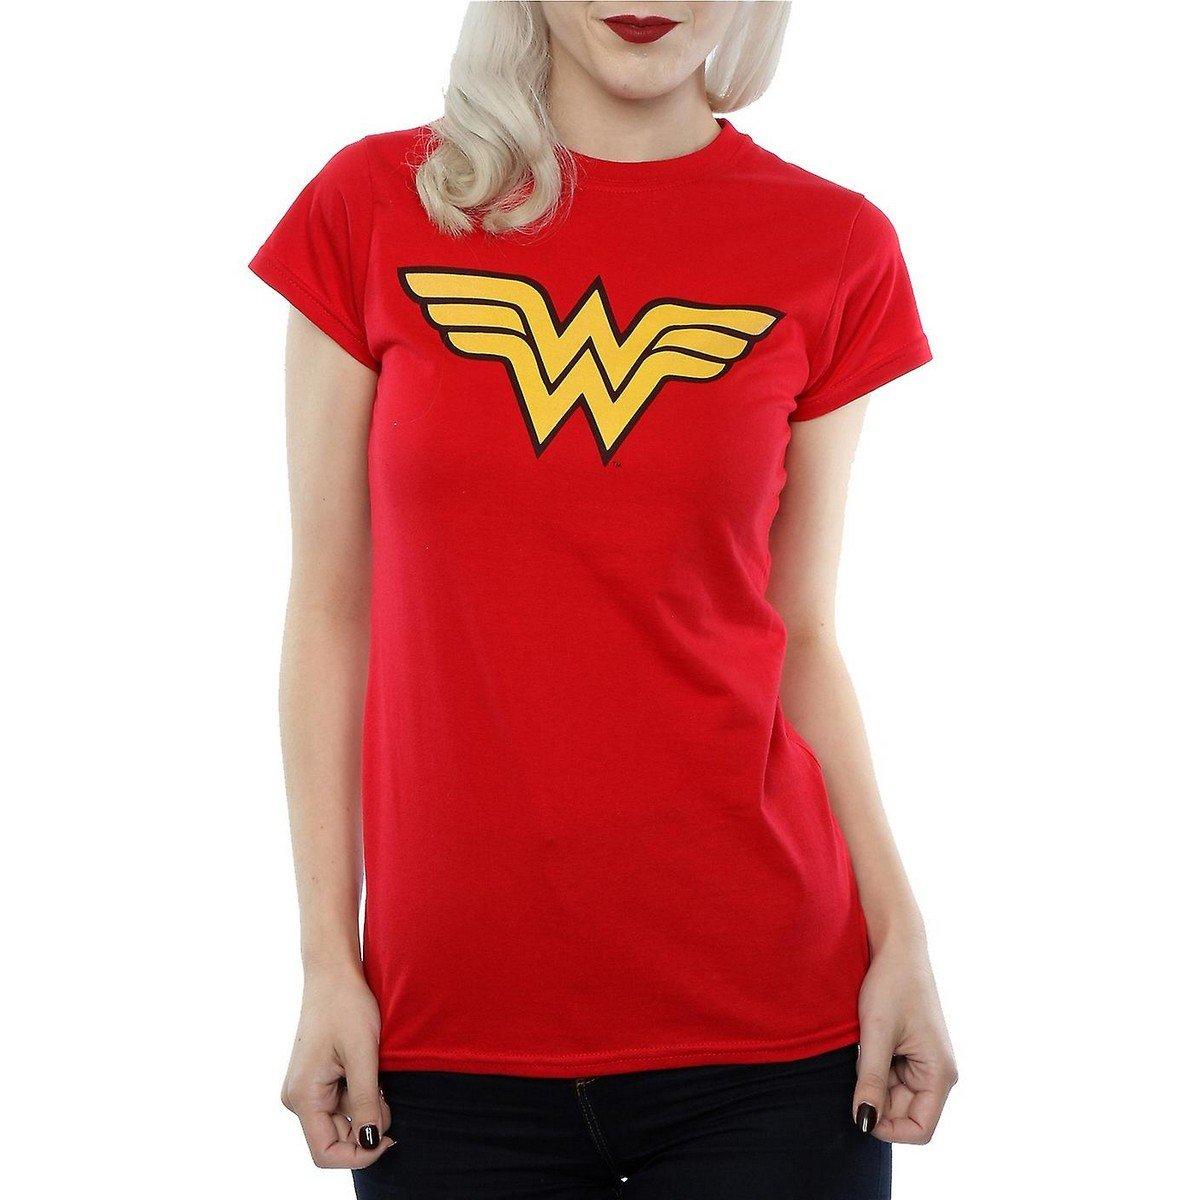 Tshirt Damen Rot Bunt M von Wonder Woman